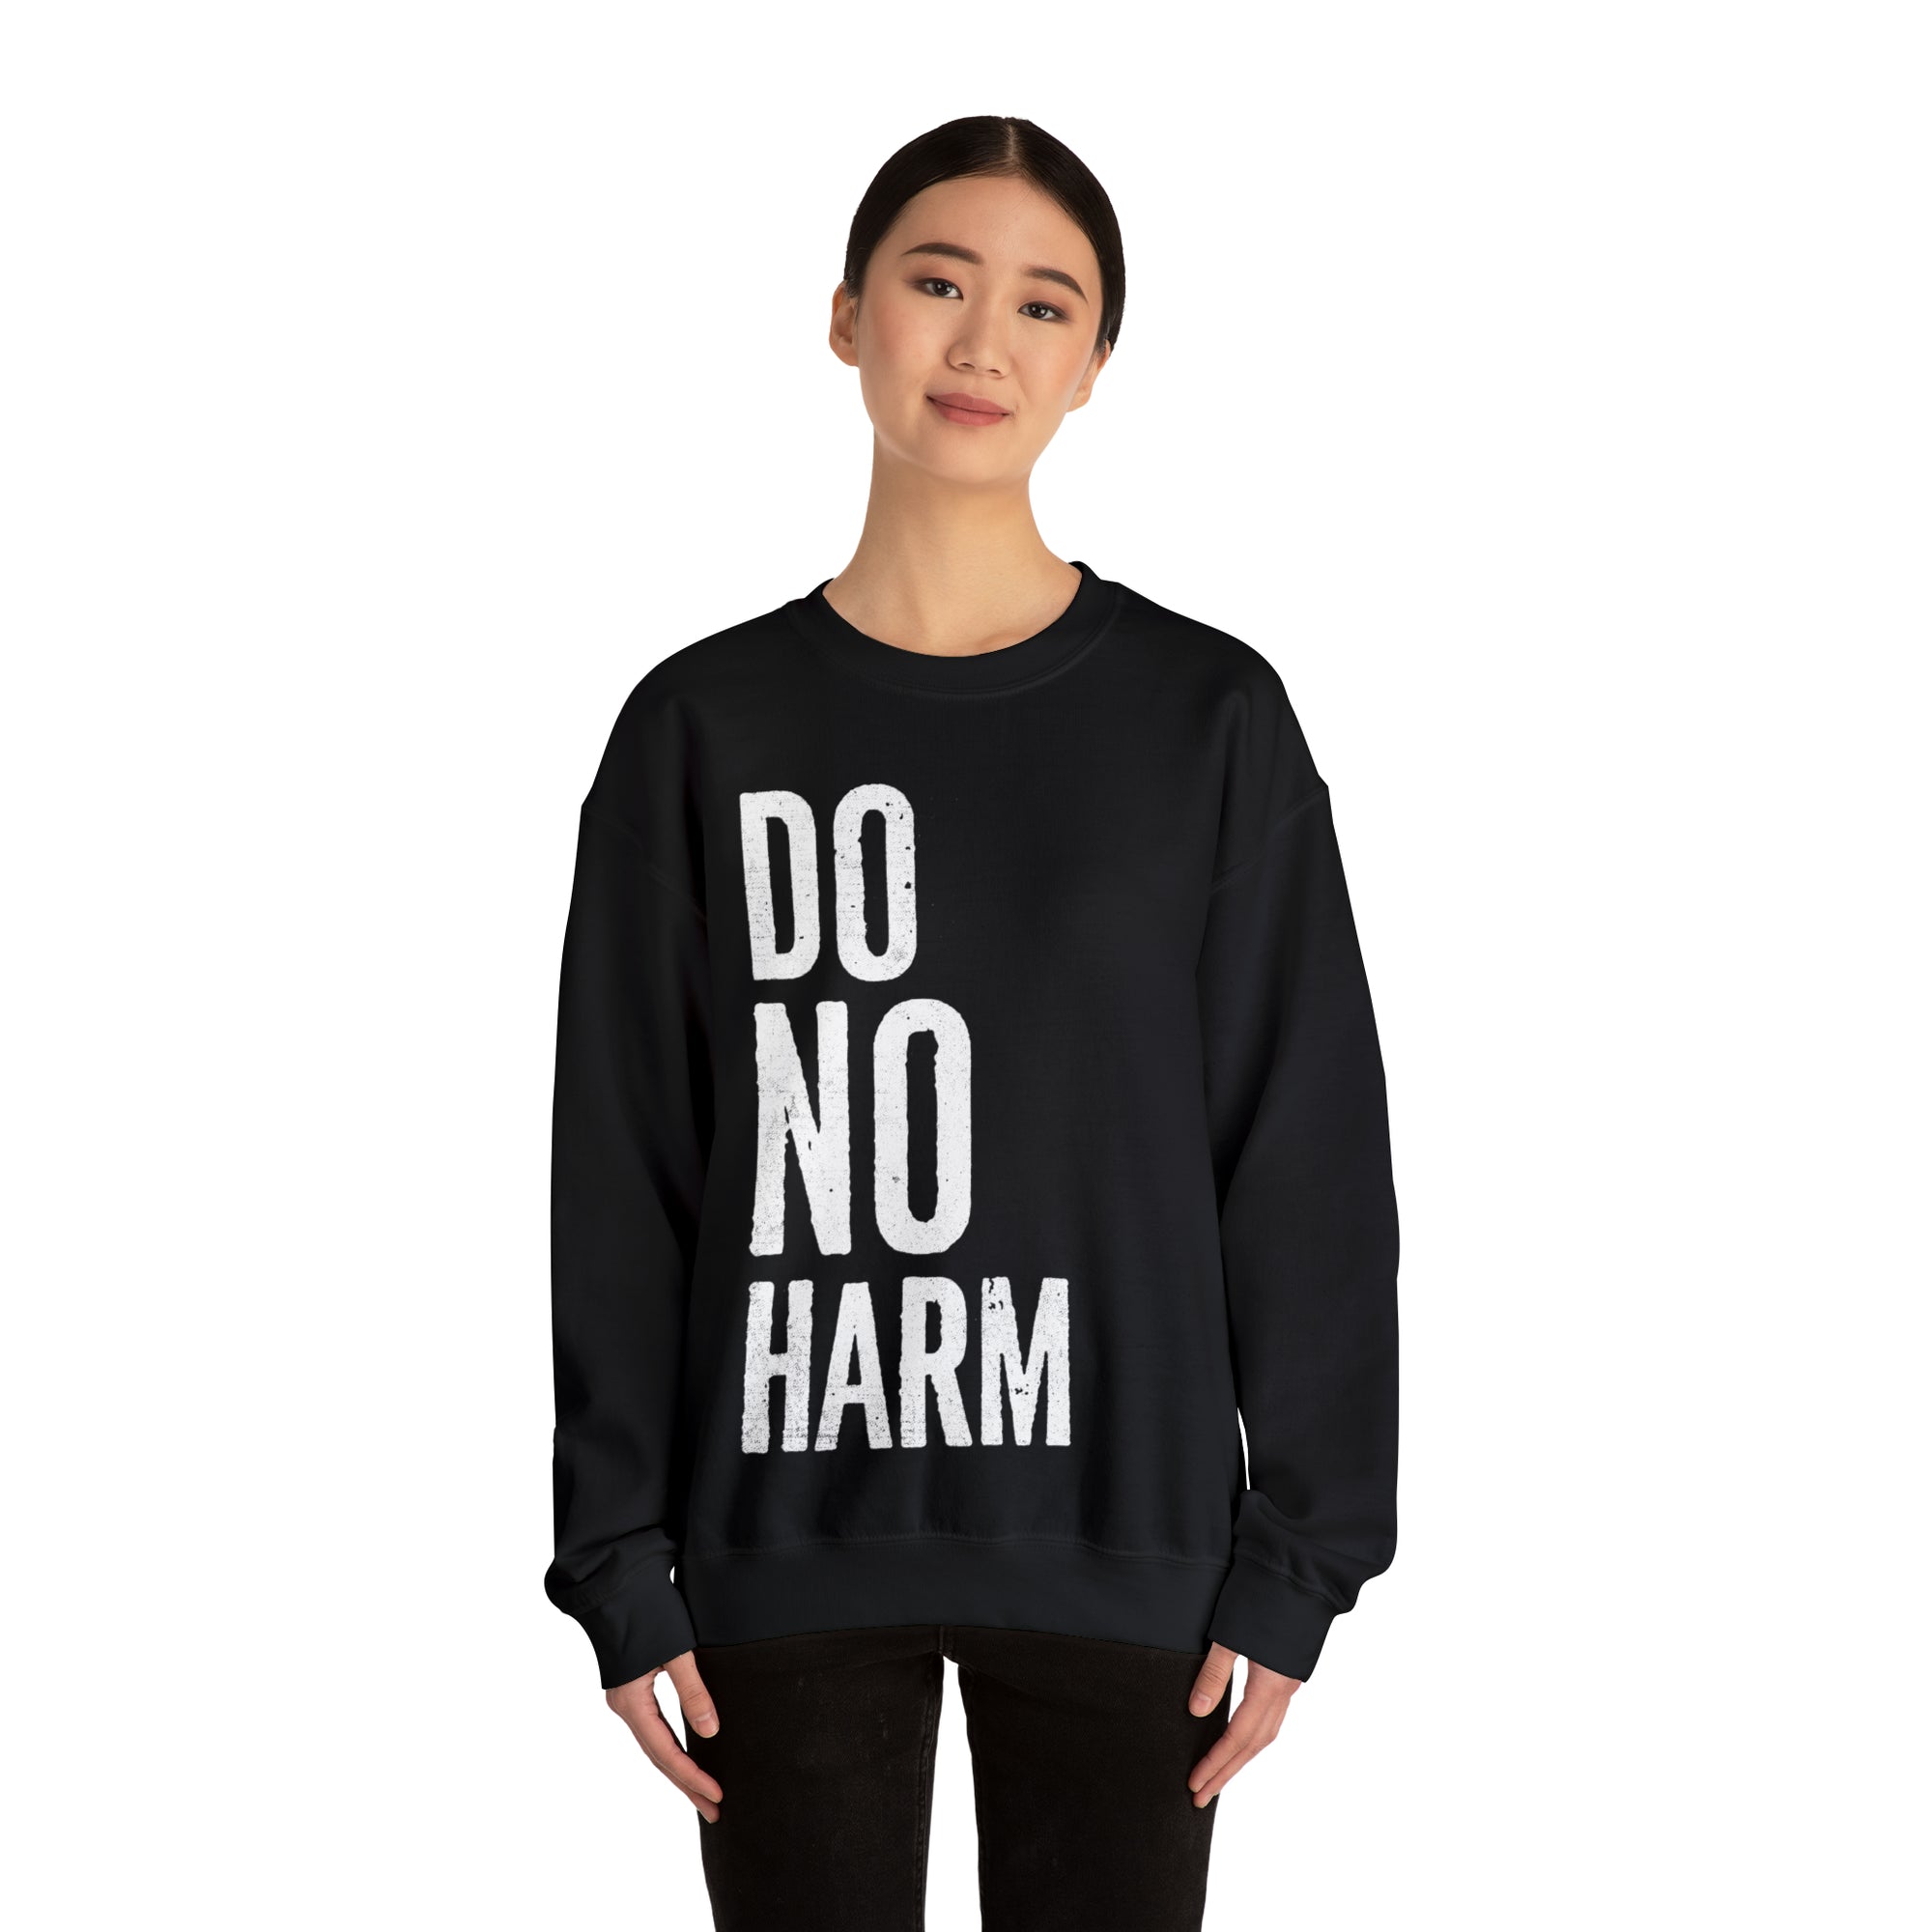 DO NO HARM Crewneck Sweatshirt